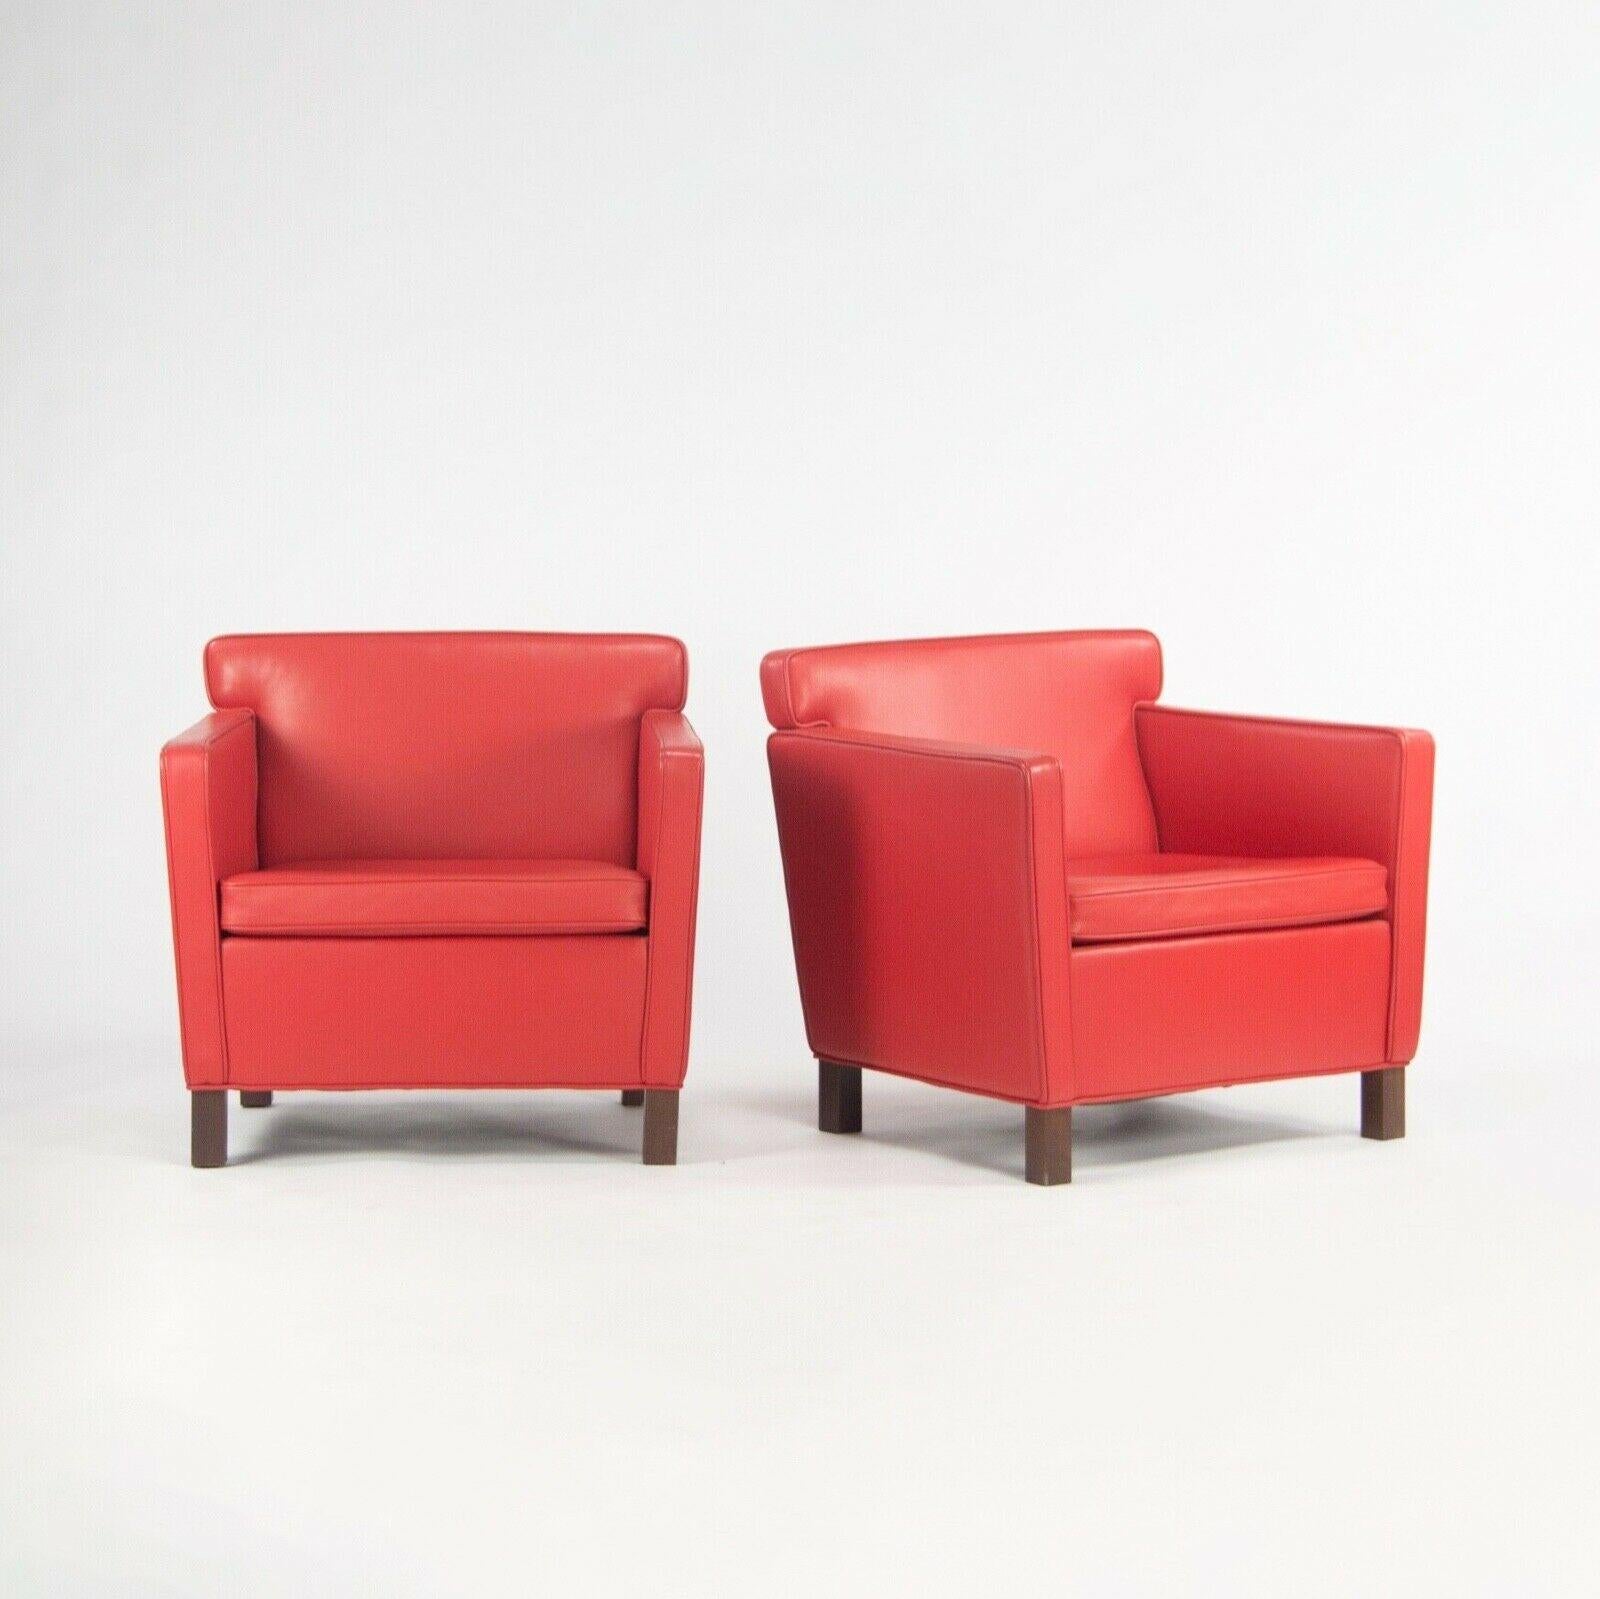 Zum Verkauf steht ein Paar Krefeld Lounge Chairs, hergestellt von Knoll und entworfen von Mies Van Der Rohe. Diese Stühle wurden mit rotem Leder bezogen und haben ebenfalls Beine aus dunklem Walnussholz. Der Zustand ist ausgezeichnet mit einigen